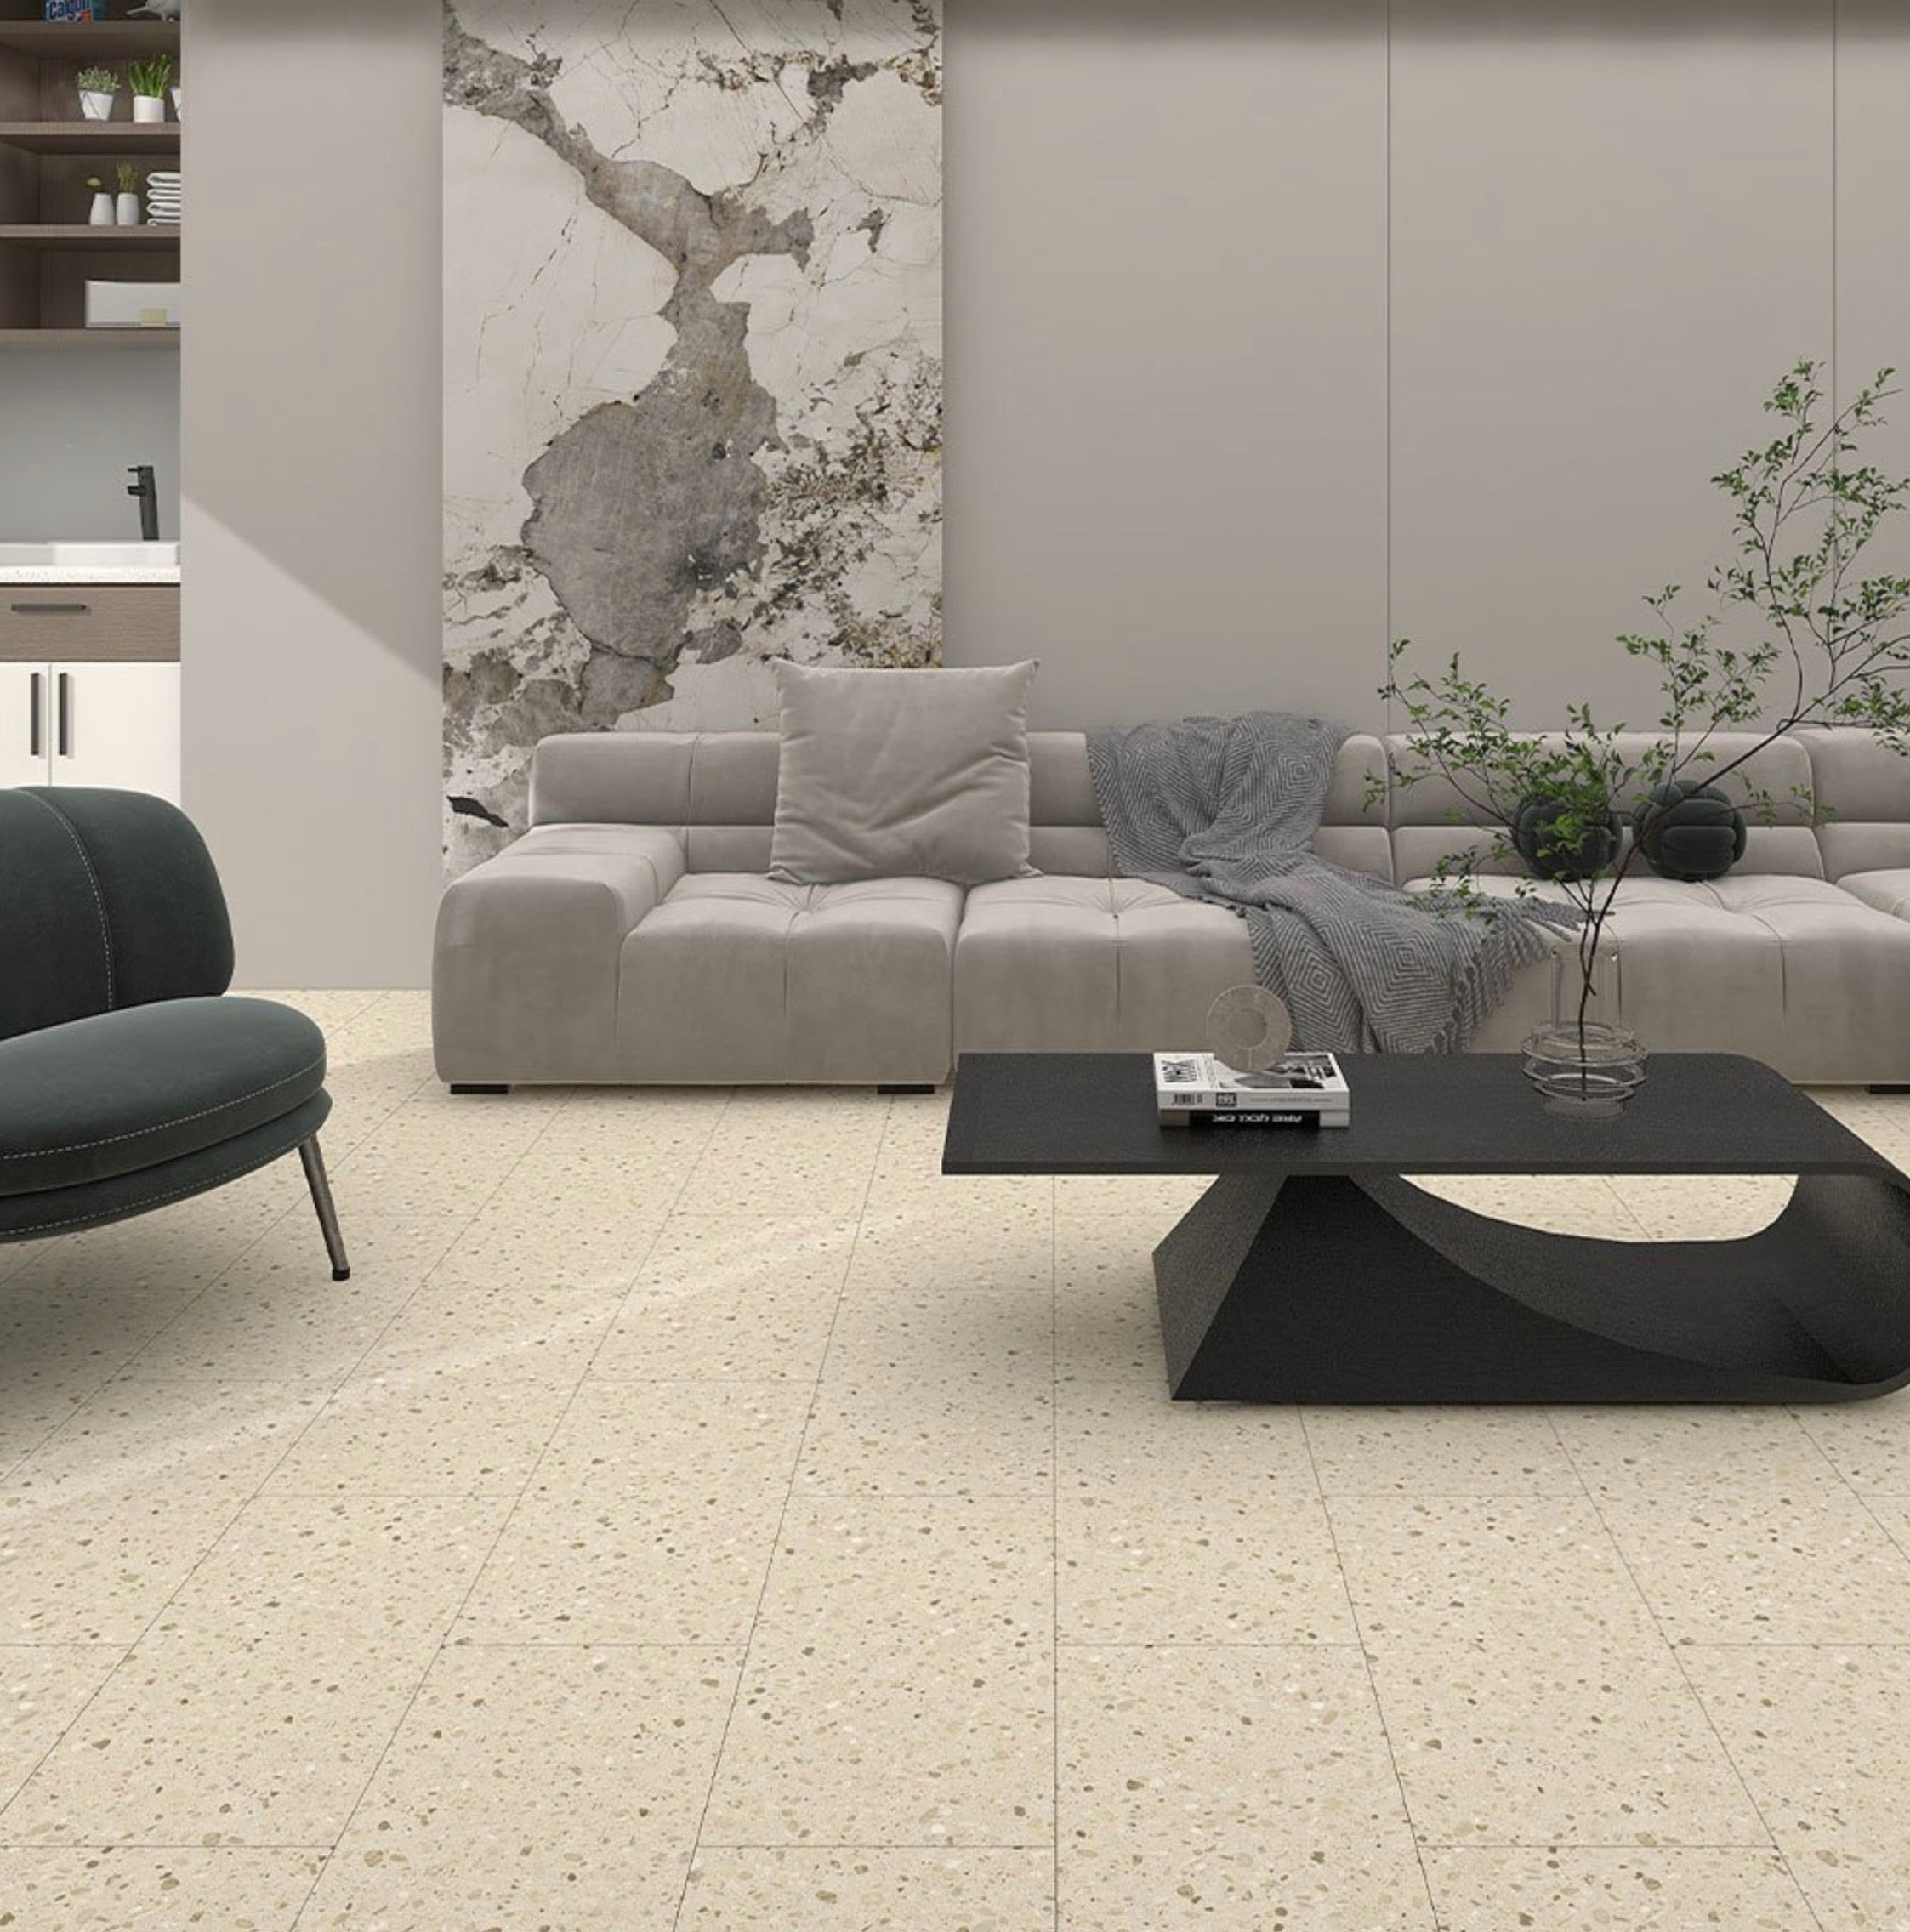 Decorfloor Natural Stone Flooring - Parma